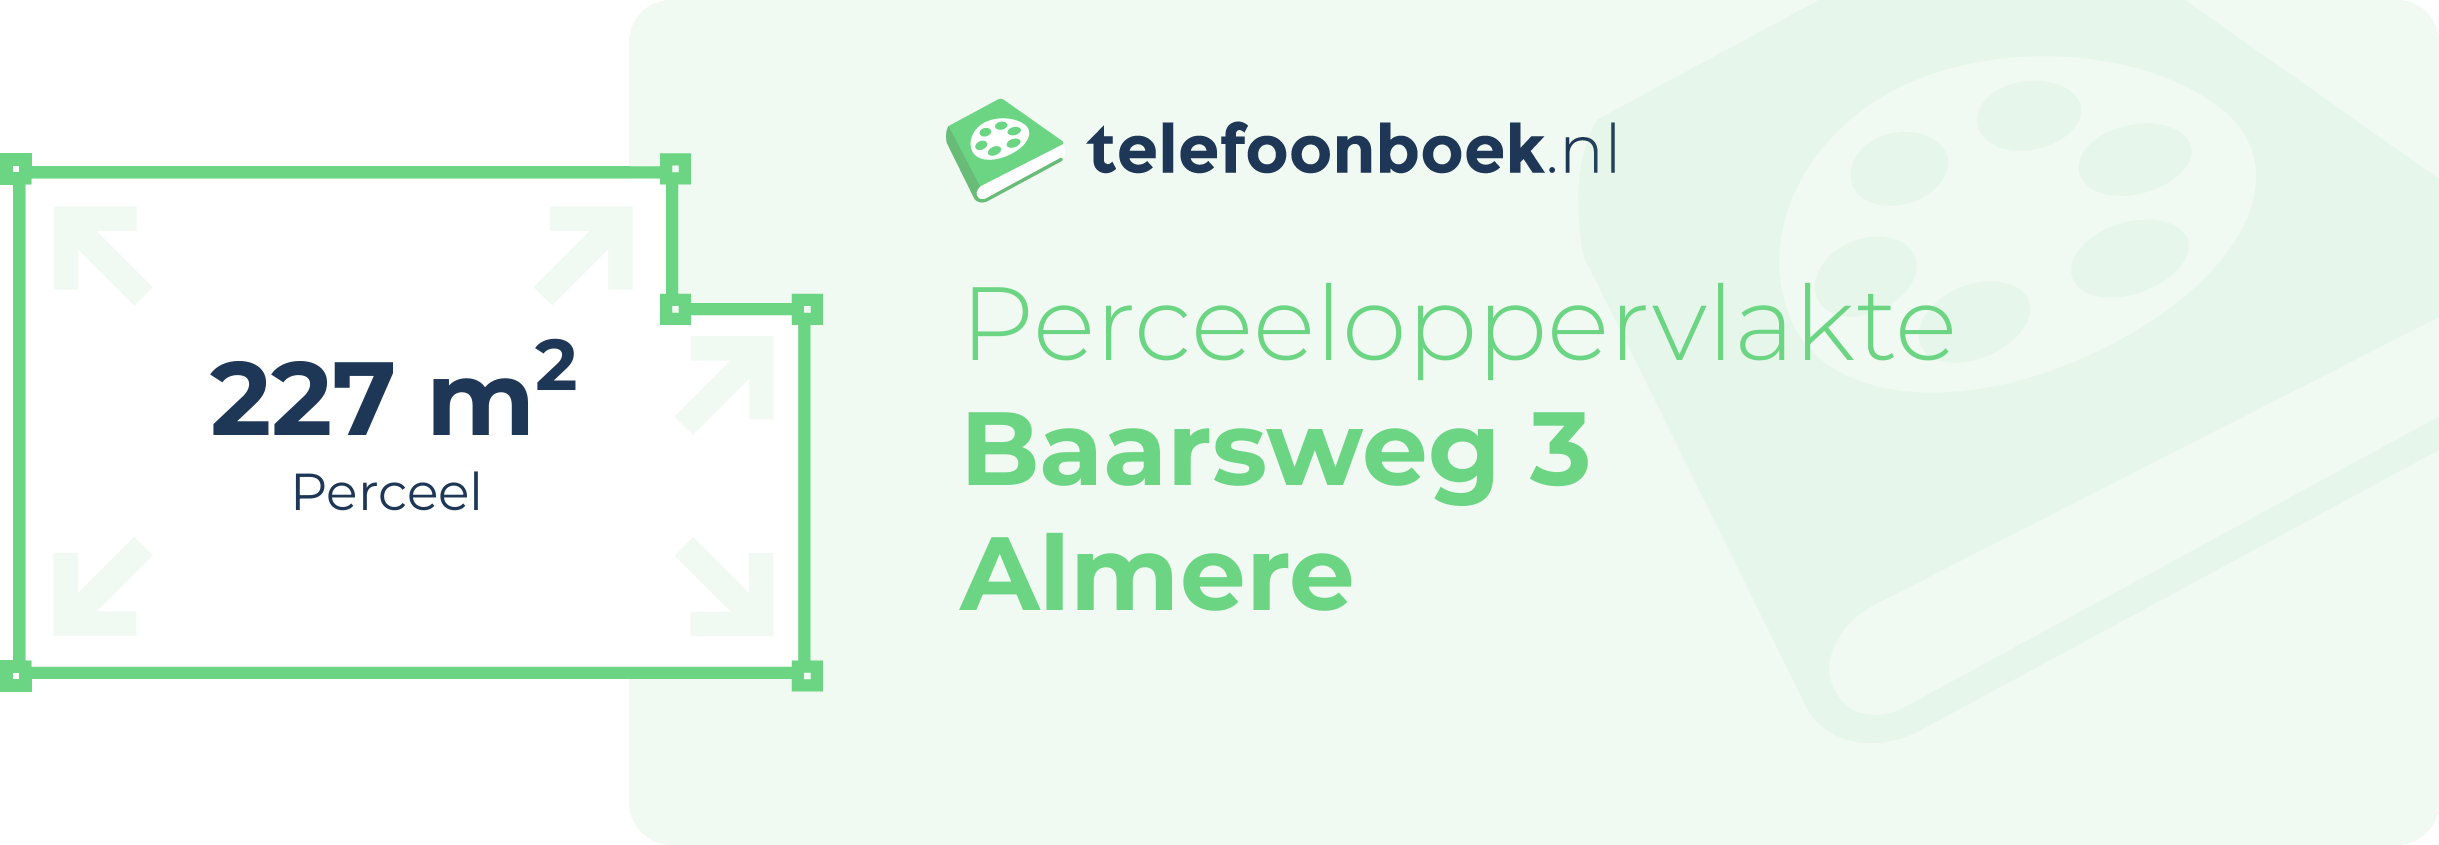 Perceeloppervlakte Baarsweg 3 Almere